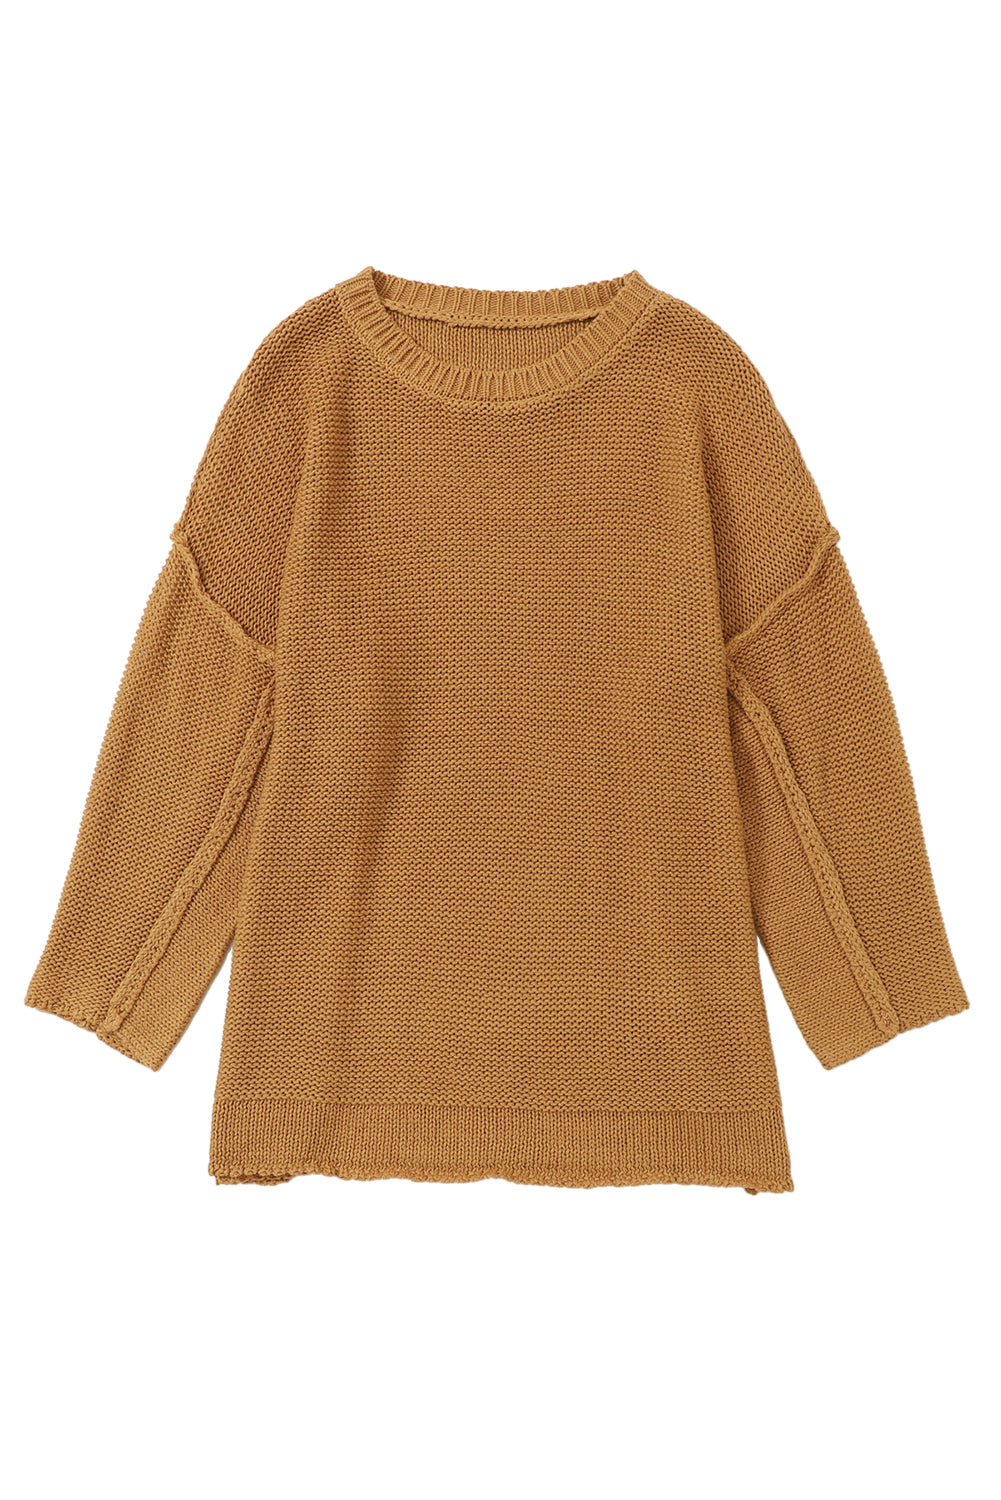 Pull ample marron en tricot texturé ample